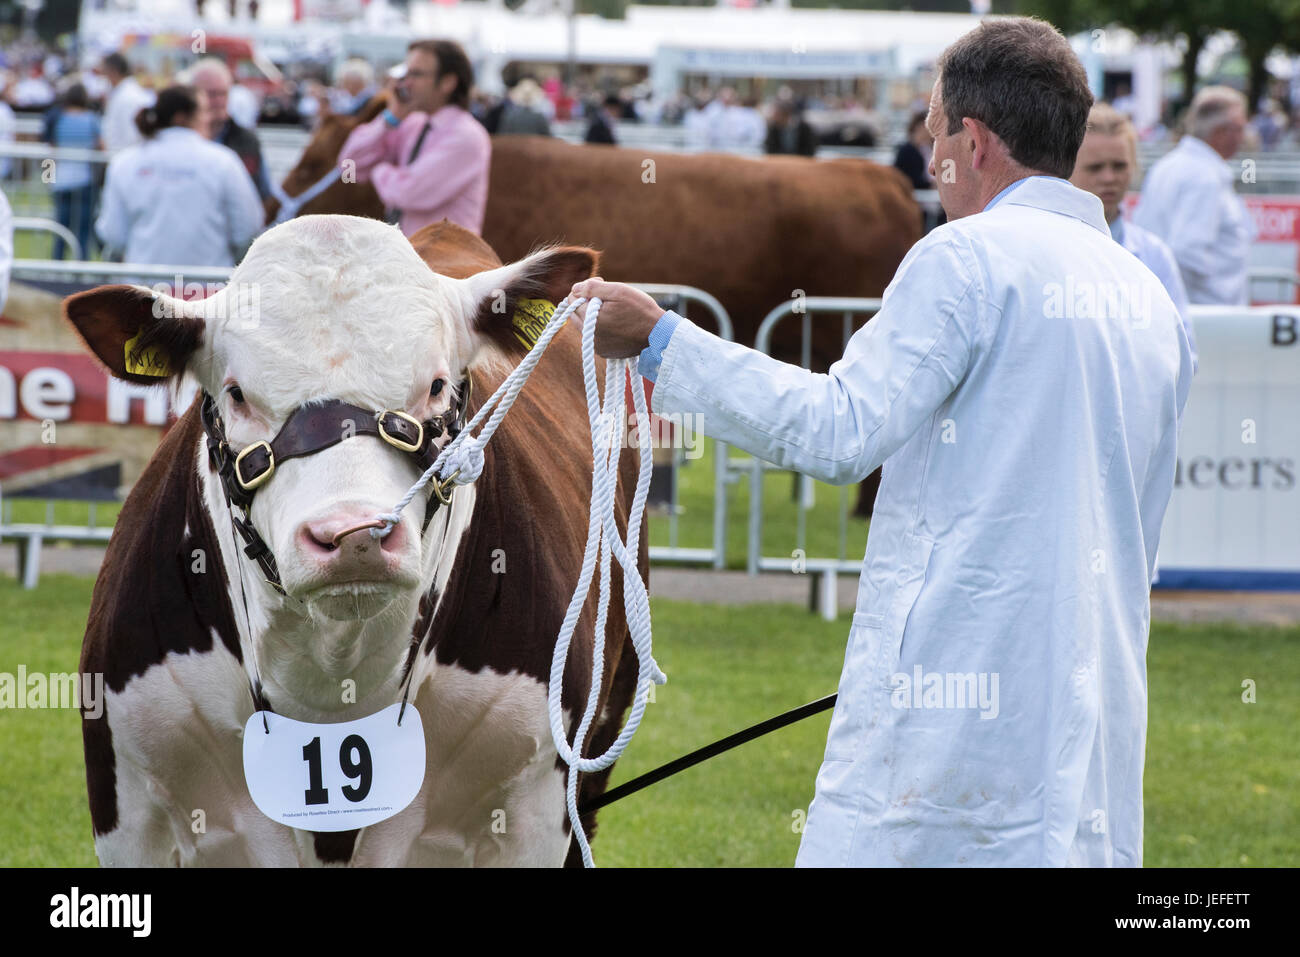 Taureau BOS. Hereford Bull en spectacle lors d'un salon agricole. ROYAUME-UNI Banque D'Images